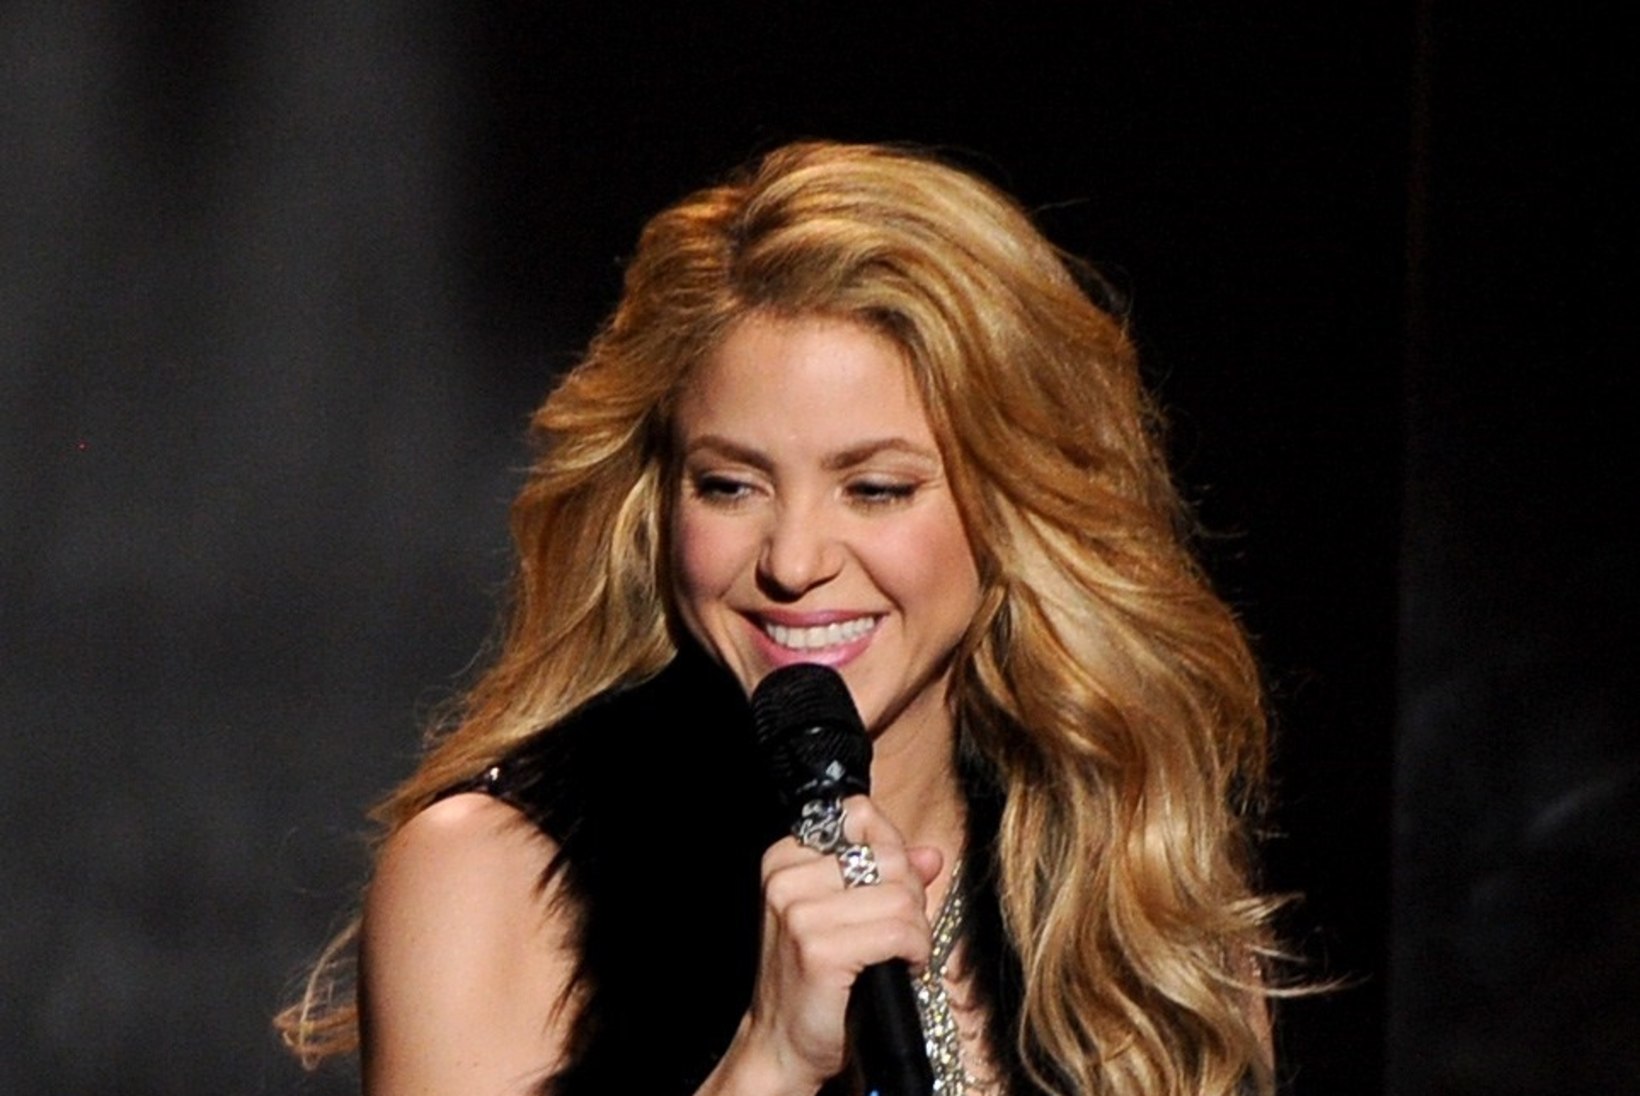 "La La La" - MMi ametliku laulu esitab ka tänavu Shakira